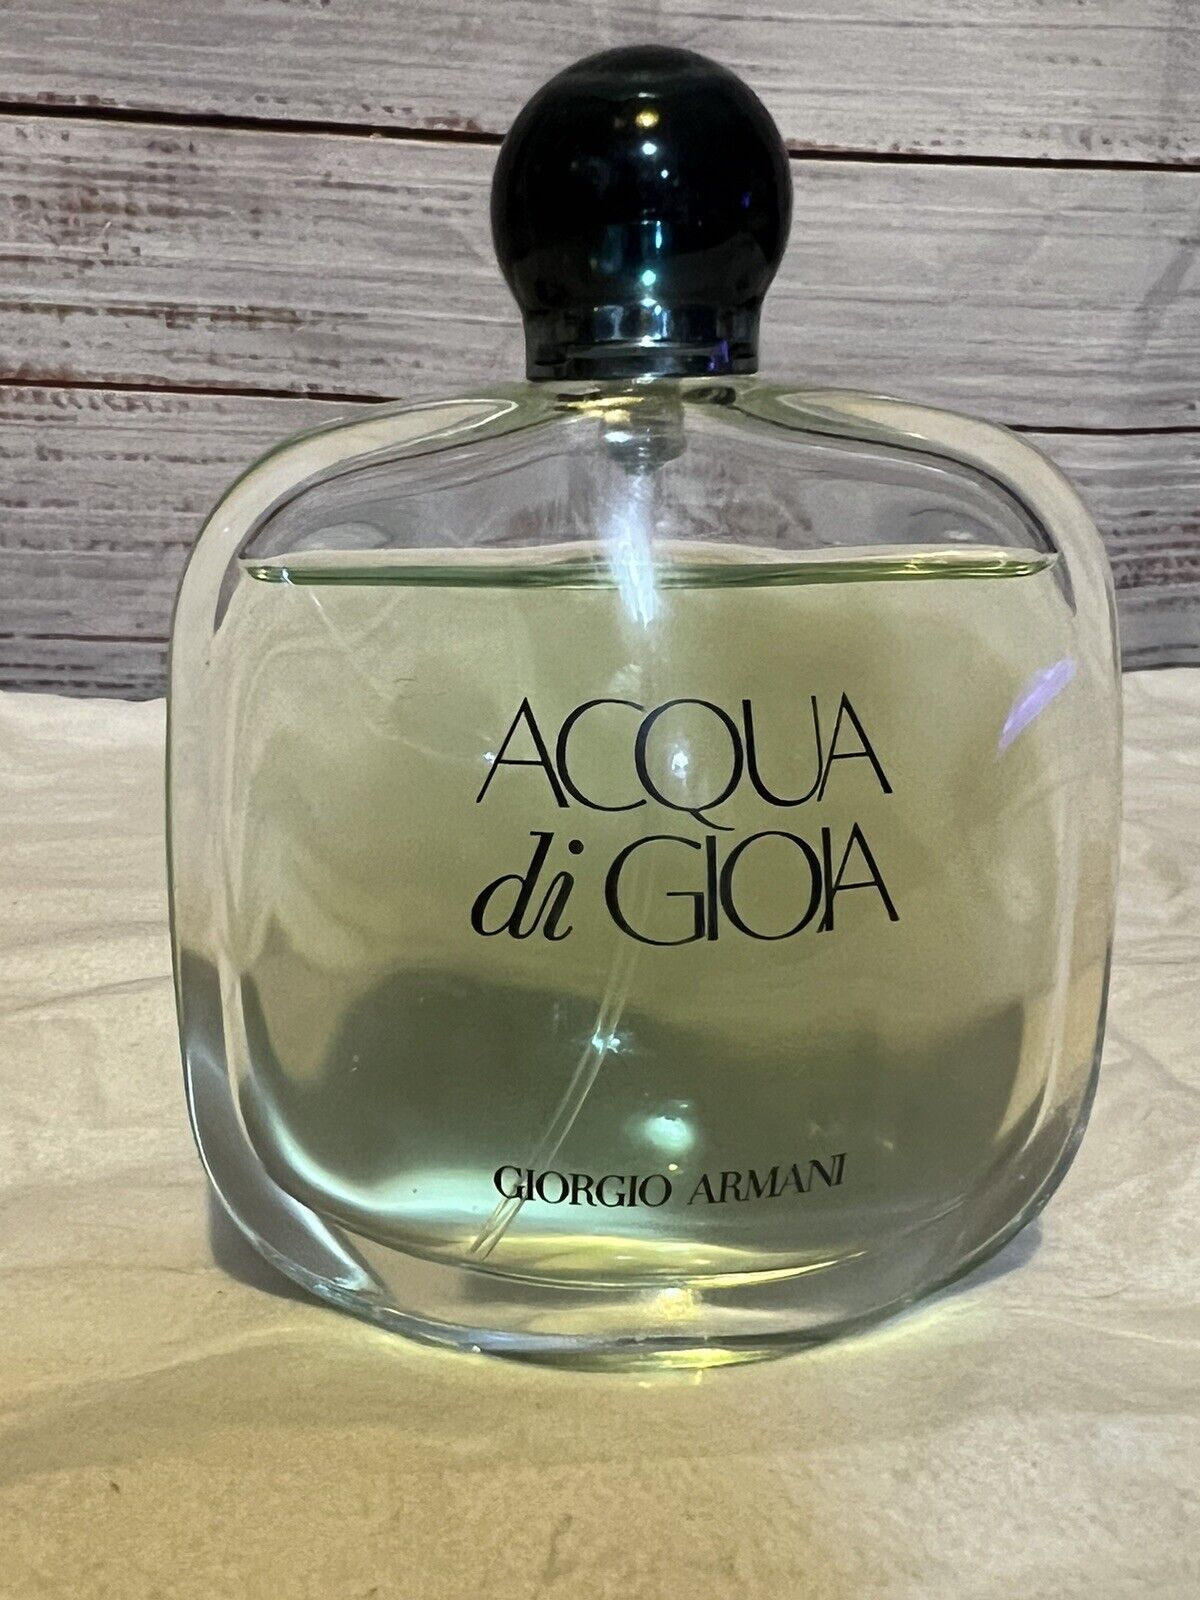 ACQUA Di GIOIA Giorgio Armani Eau De Parfum Pour Femme 100ml/3.4fl oz 90% Full 